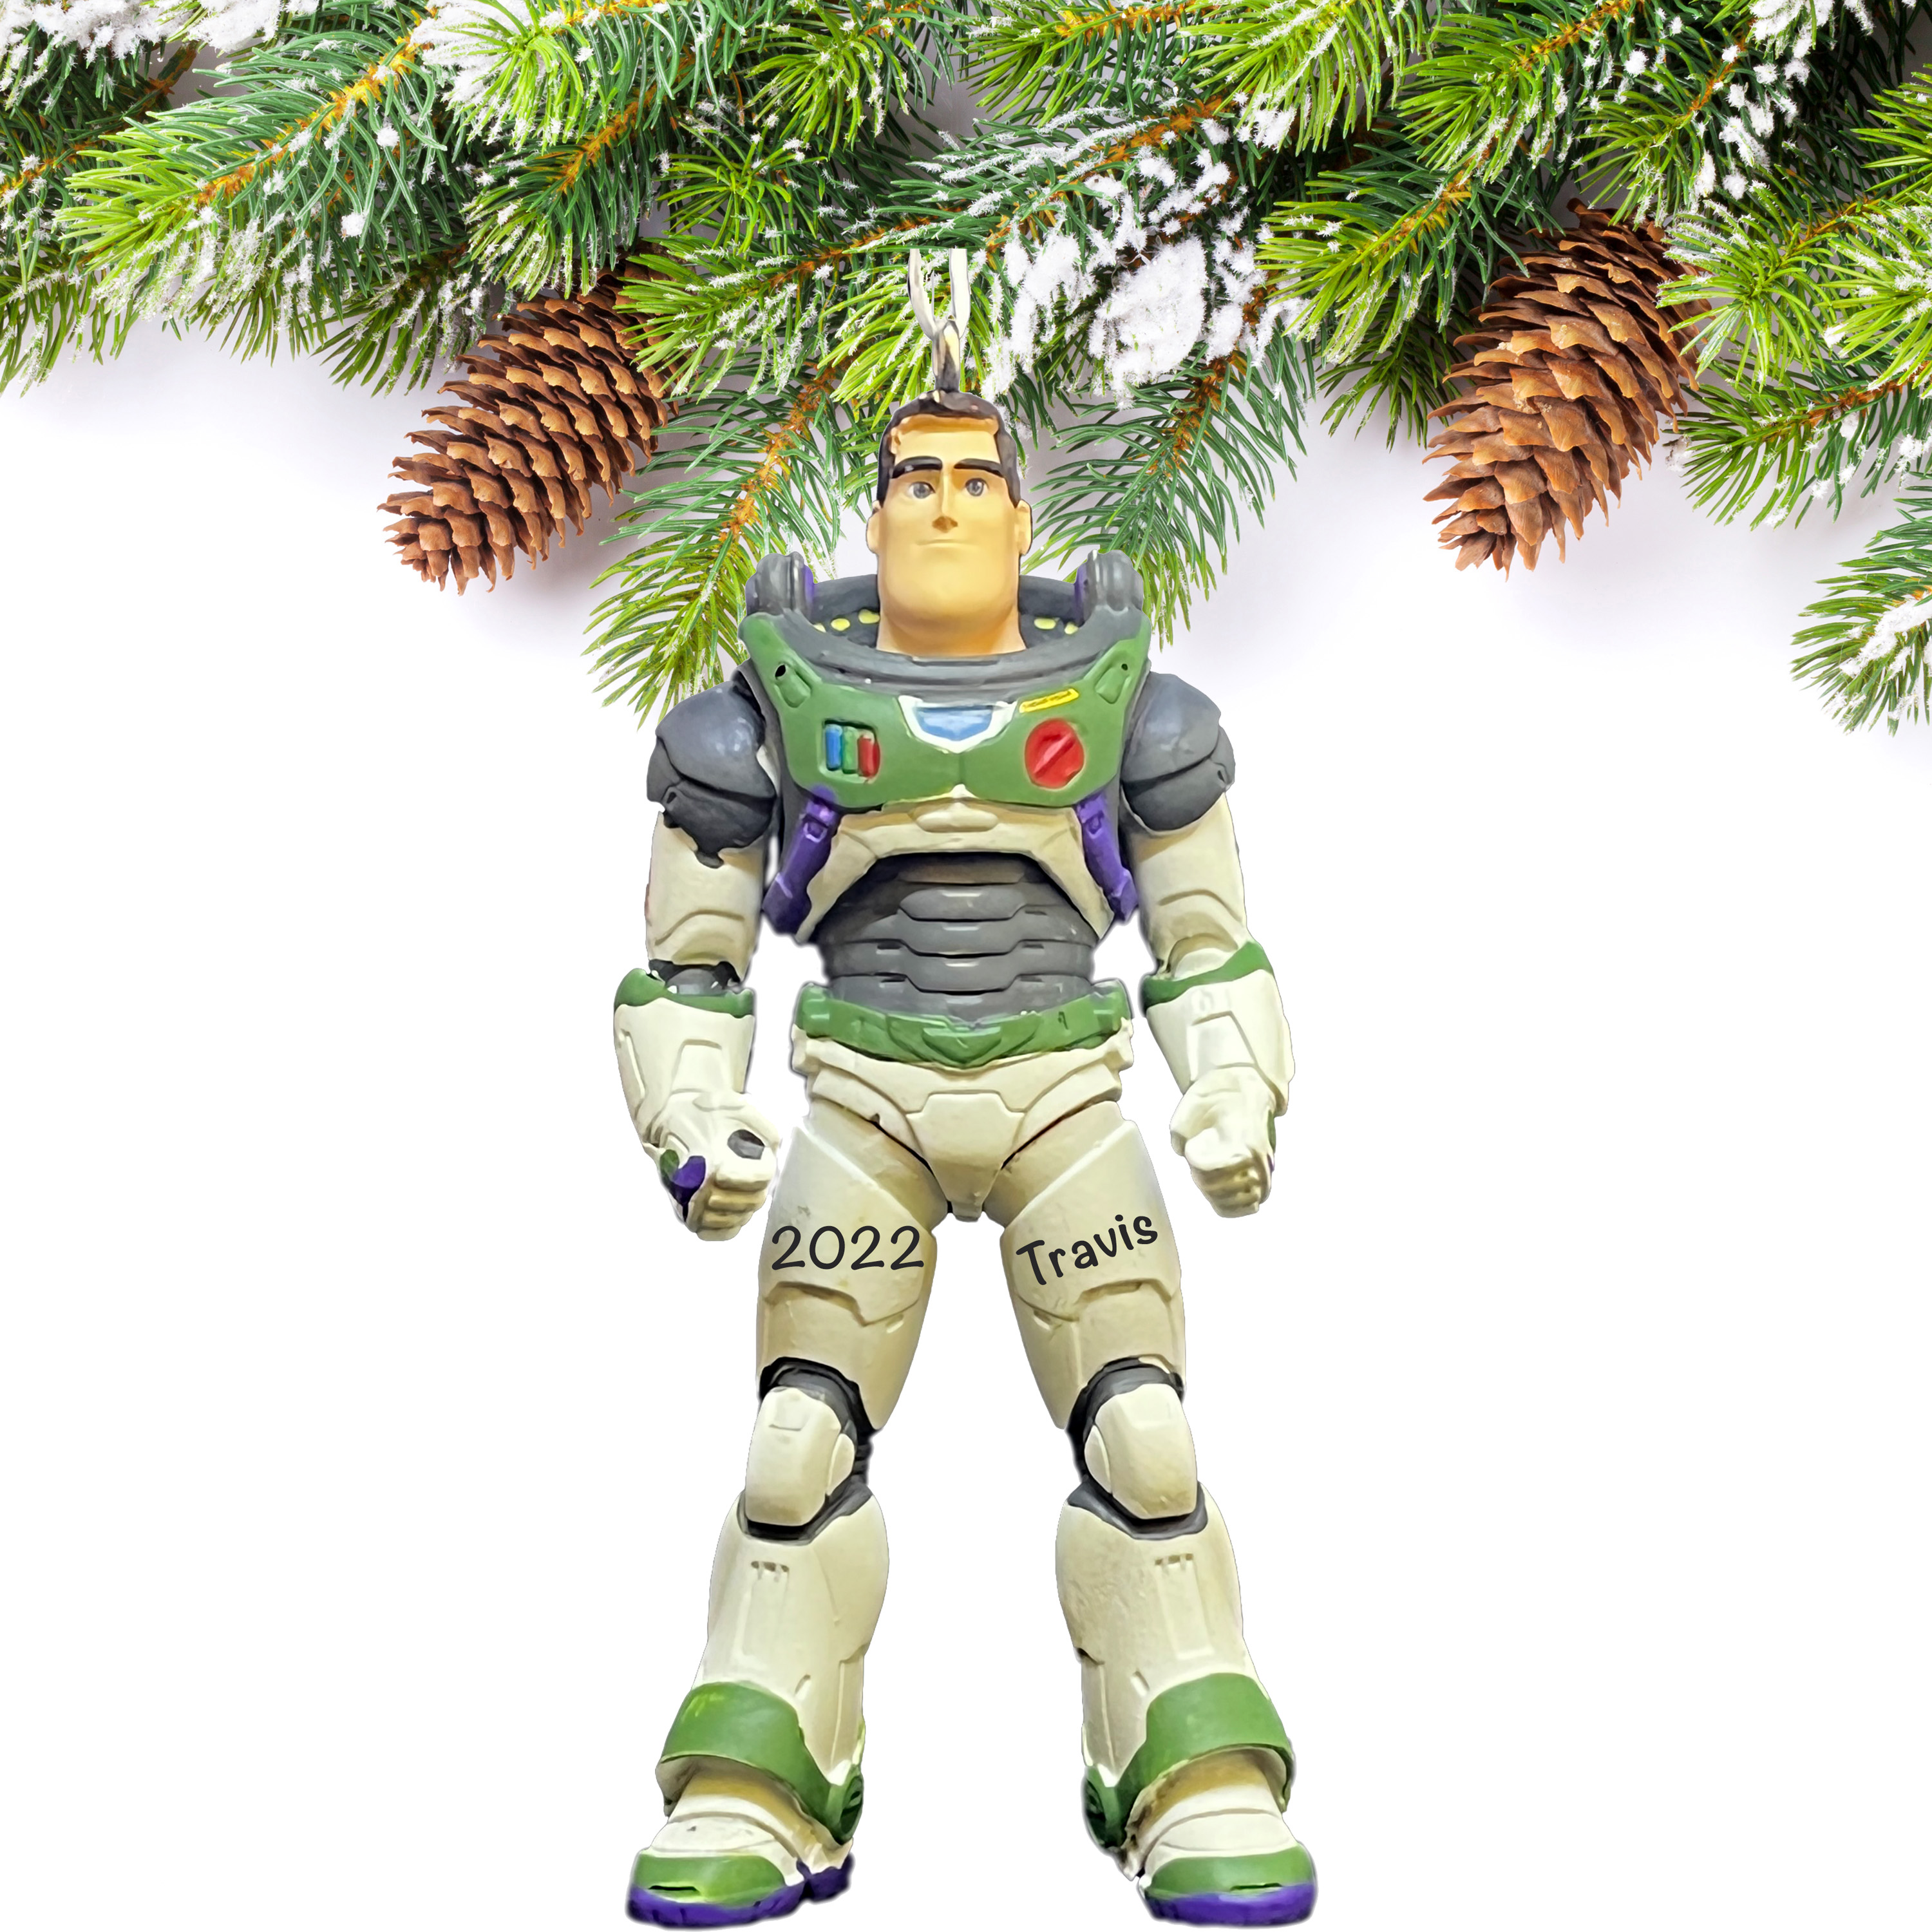 Buzz Lightyear Ornament - Disney Buzz Christmas Ornament - Personalized Buzz Lightyear Christmas Ornament